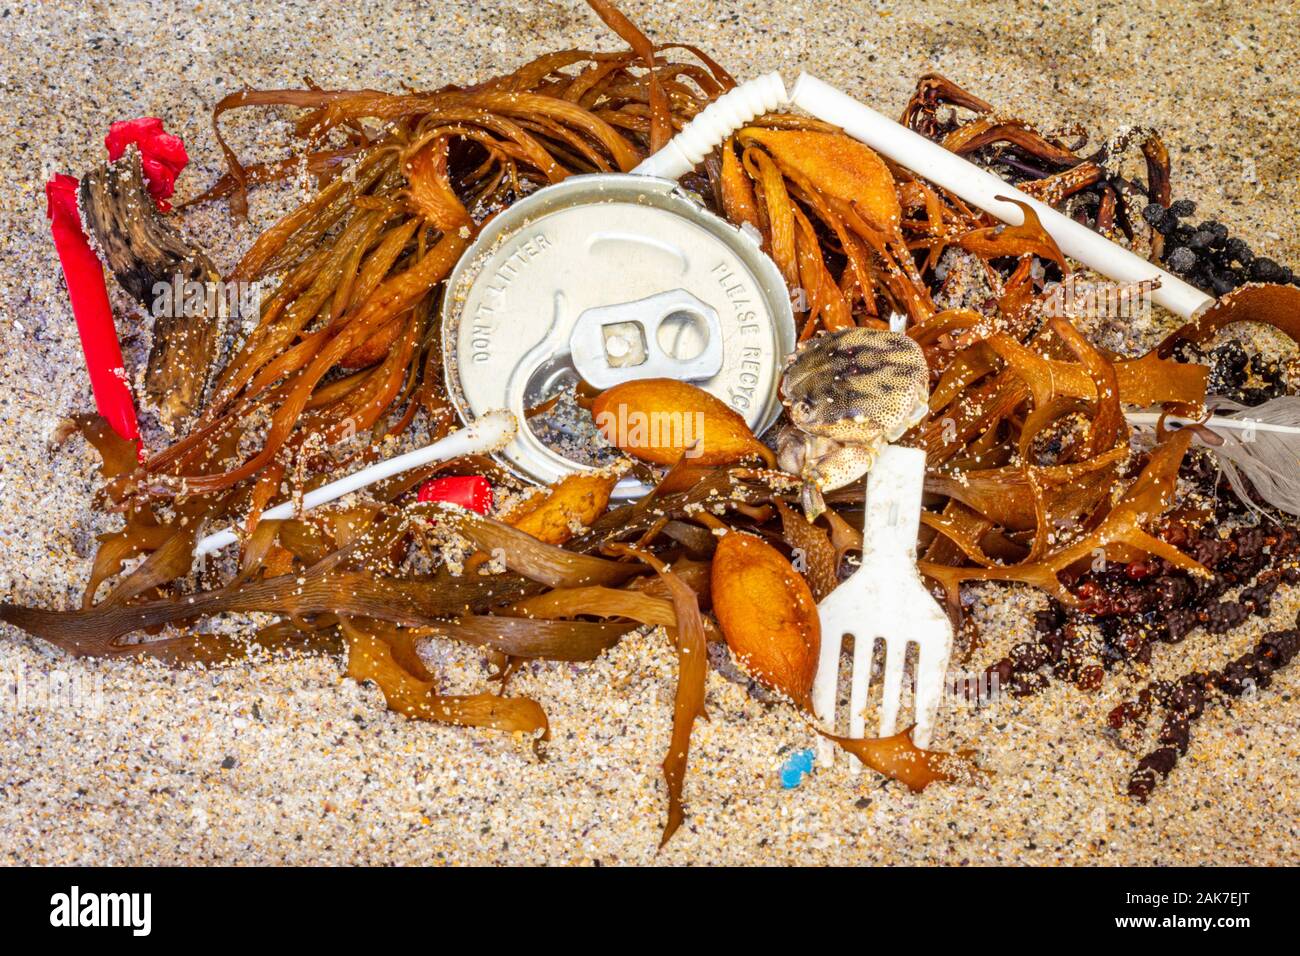 Will Seaweed Straws Help Us Reduce Plastic Use?